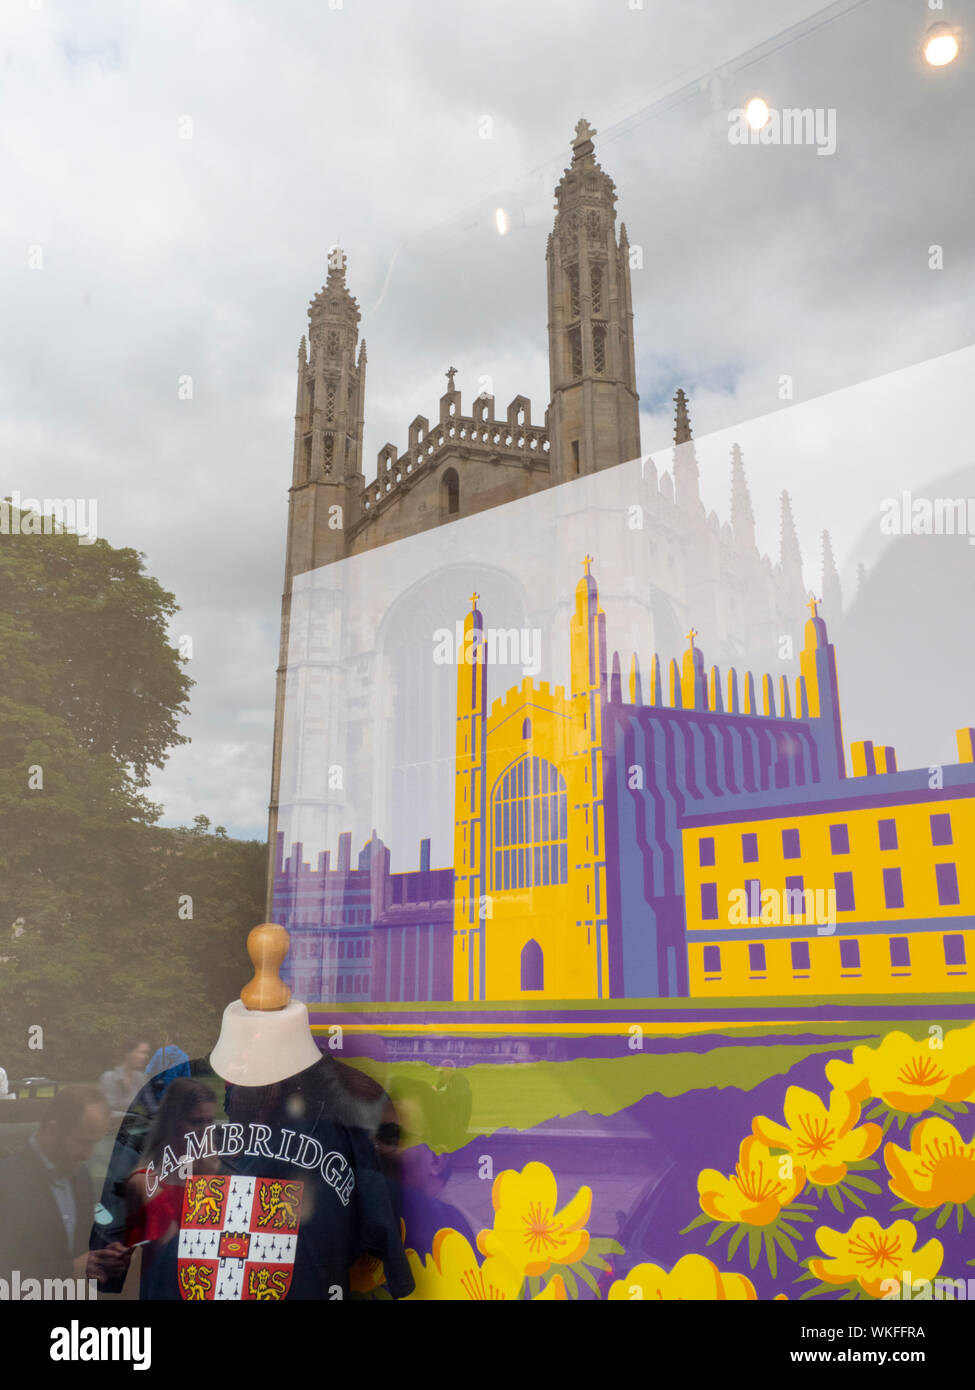 Il Kings College Chapel riflettendo nella finestra del Kings College Chapel shop in Kings Parade Cambridge Regno Unito che vende souvenir turistici Foto Stock